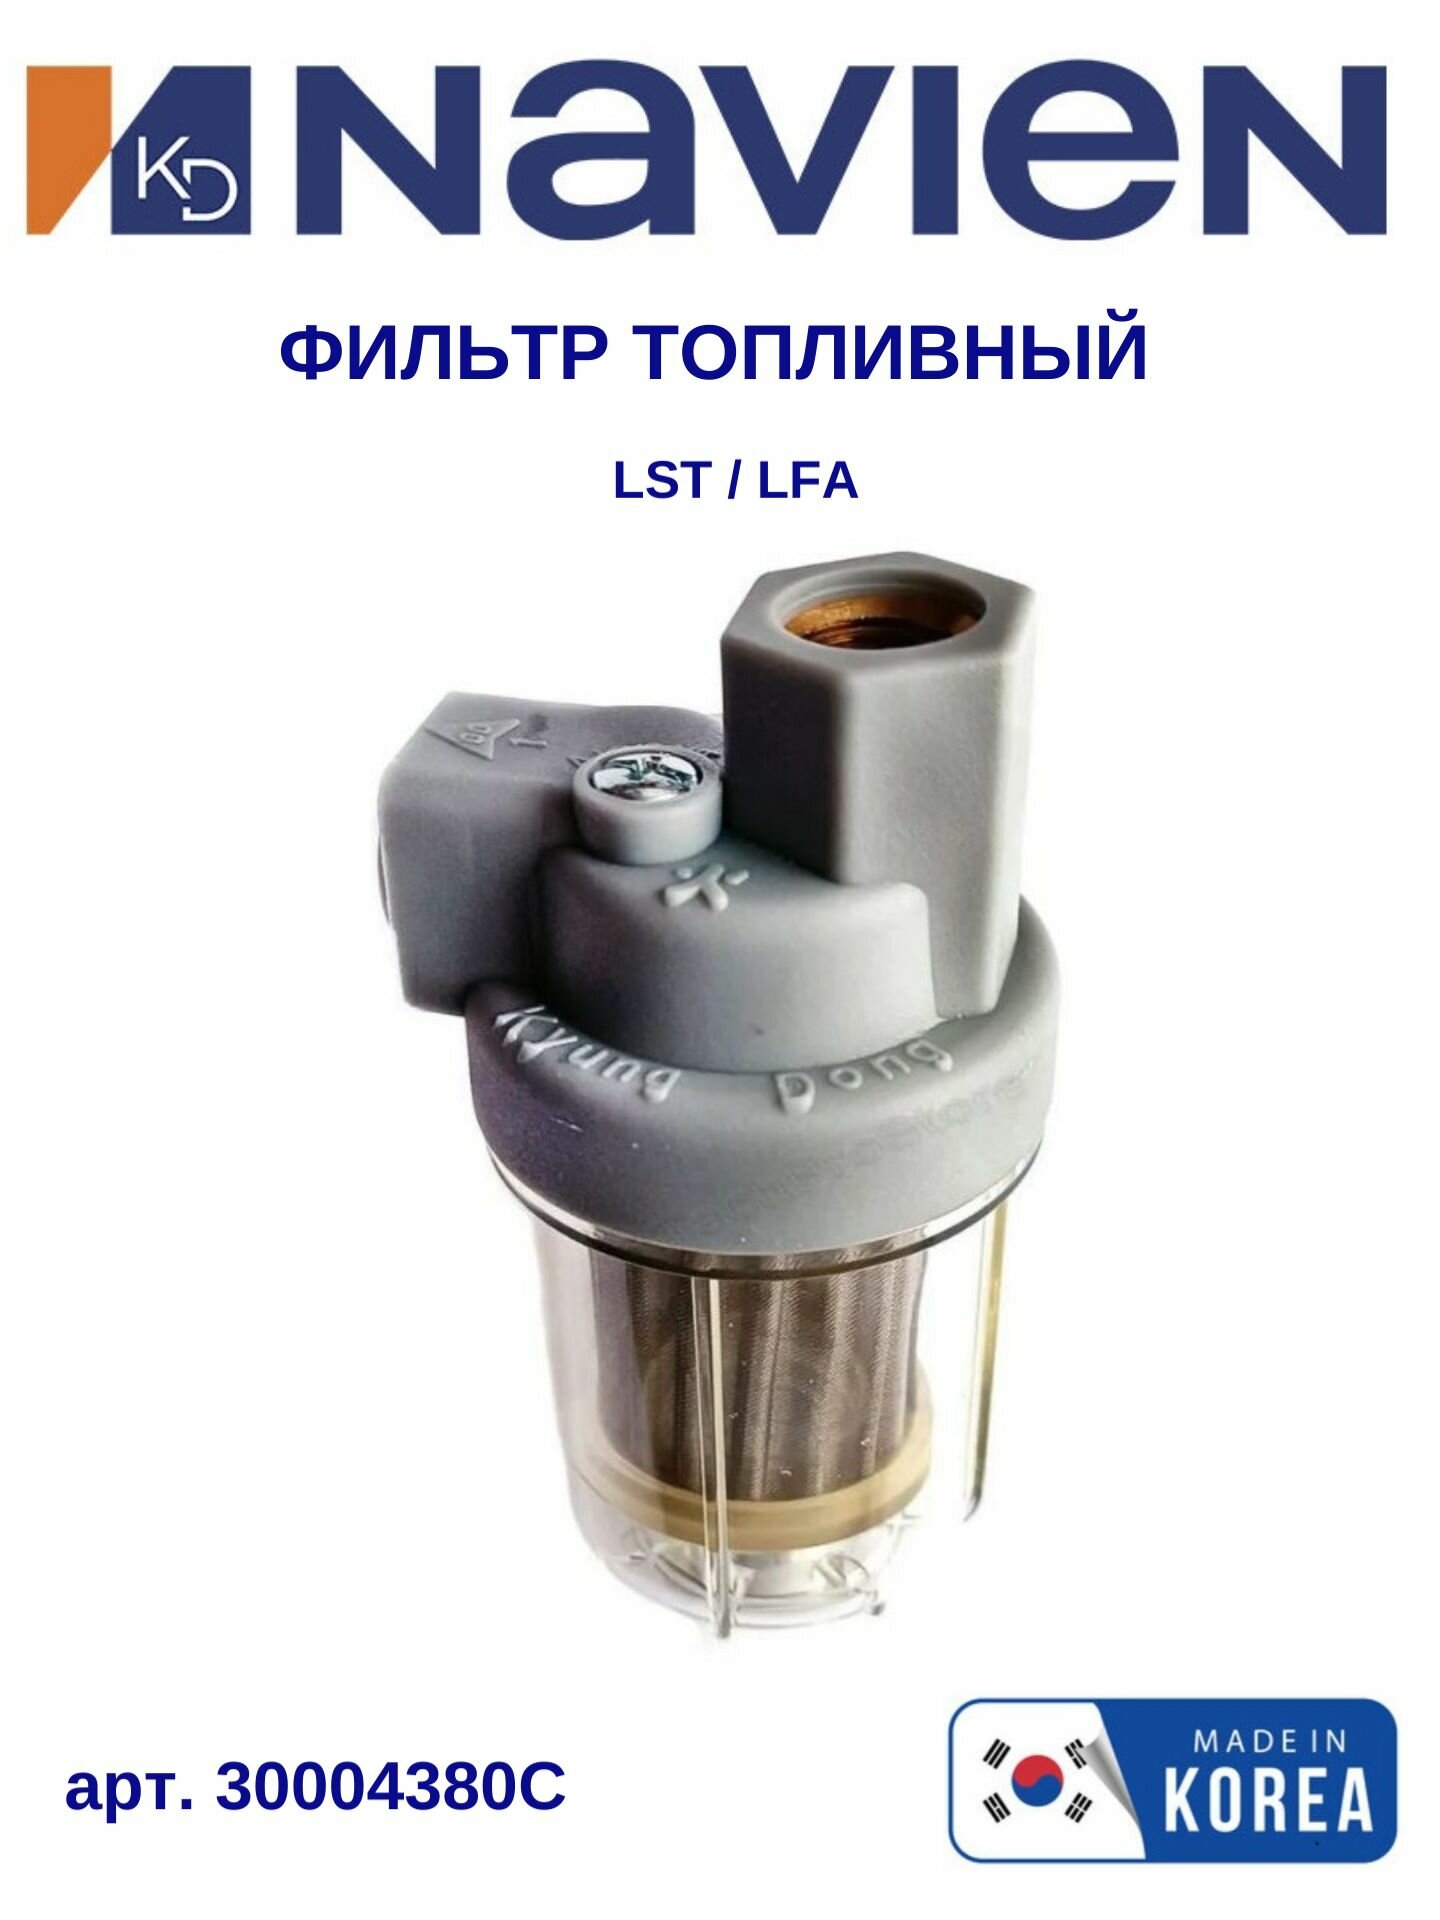 Фильтр топливный Navien (Навьен) LST/LFA 13-40K (30004380C)